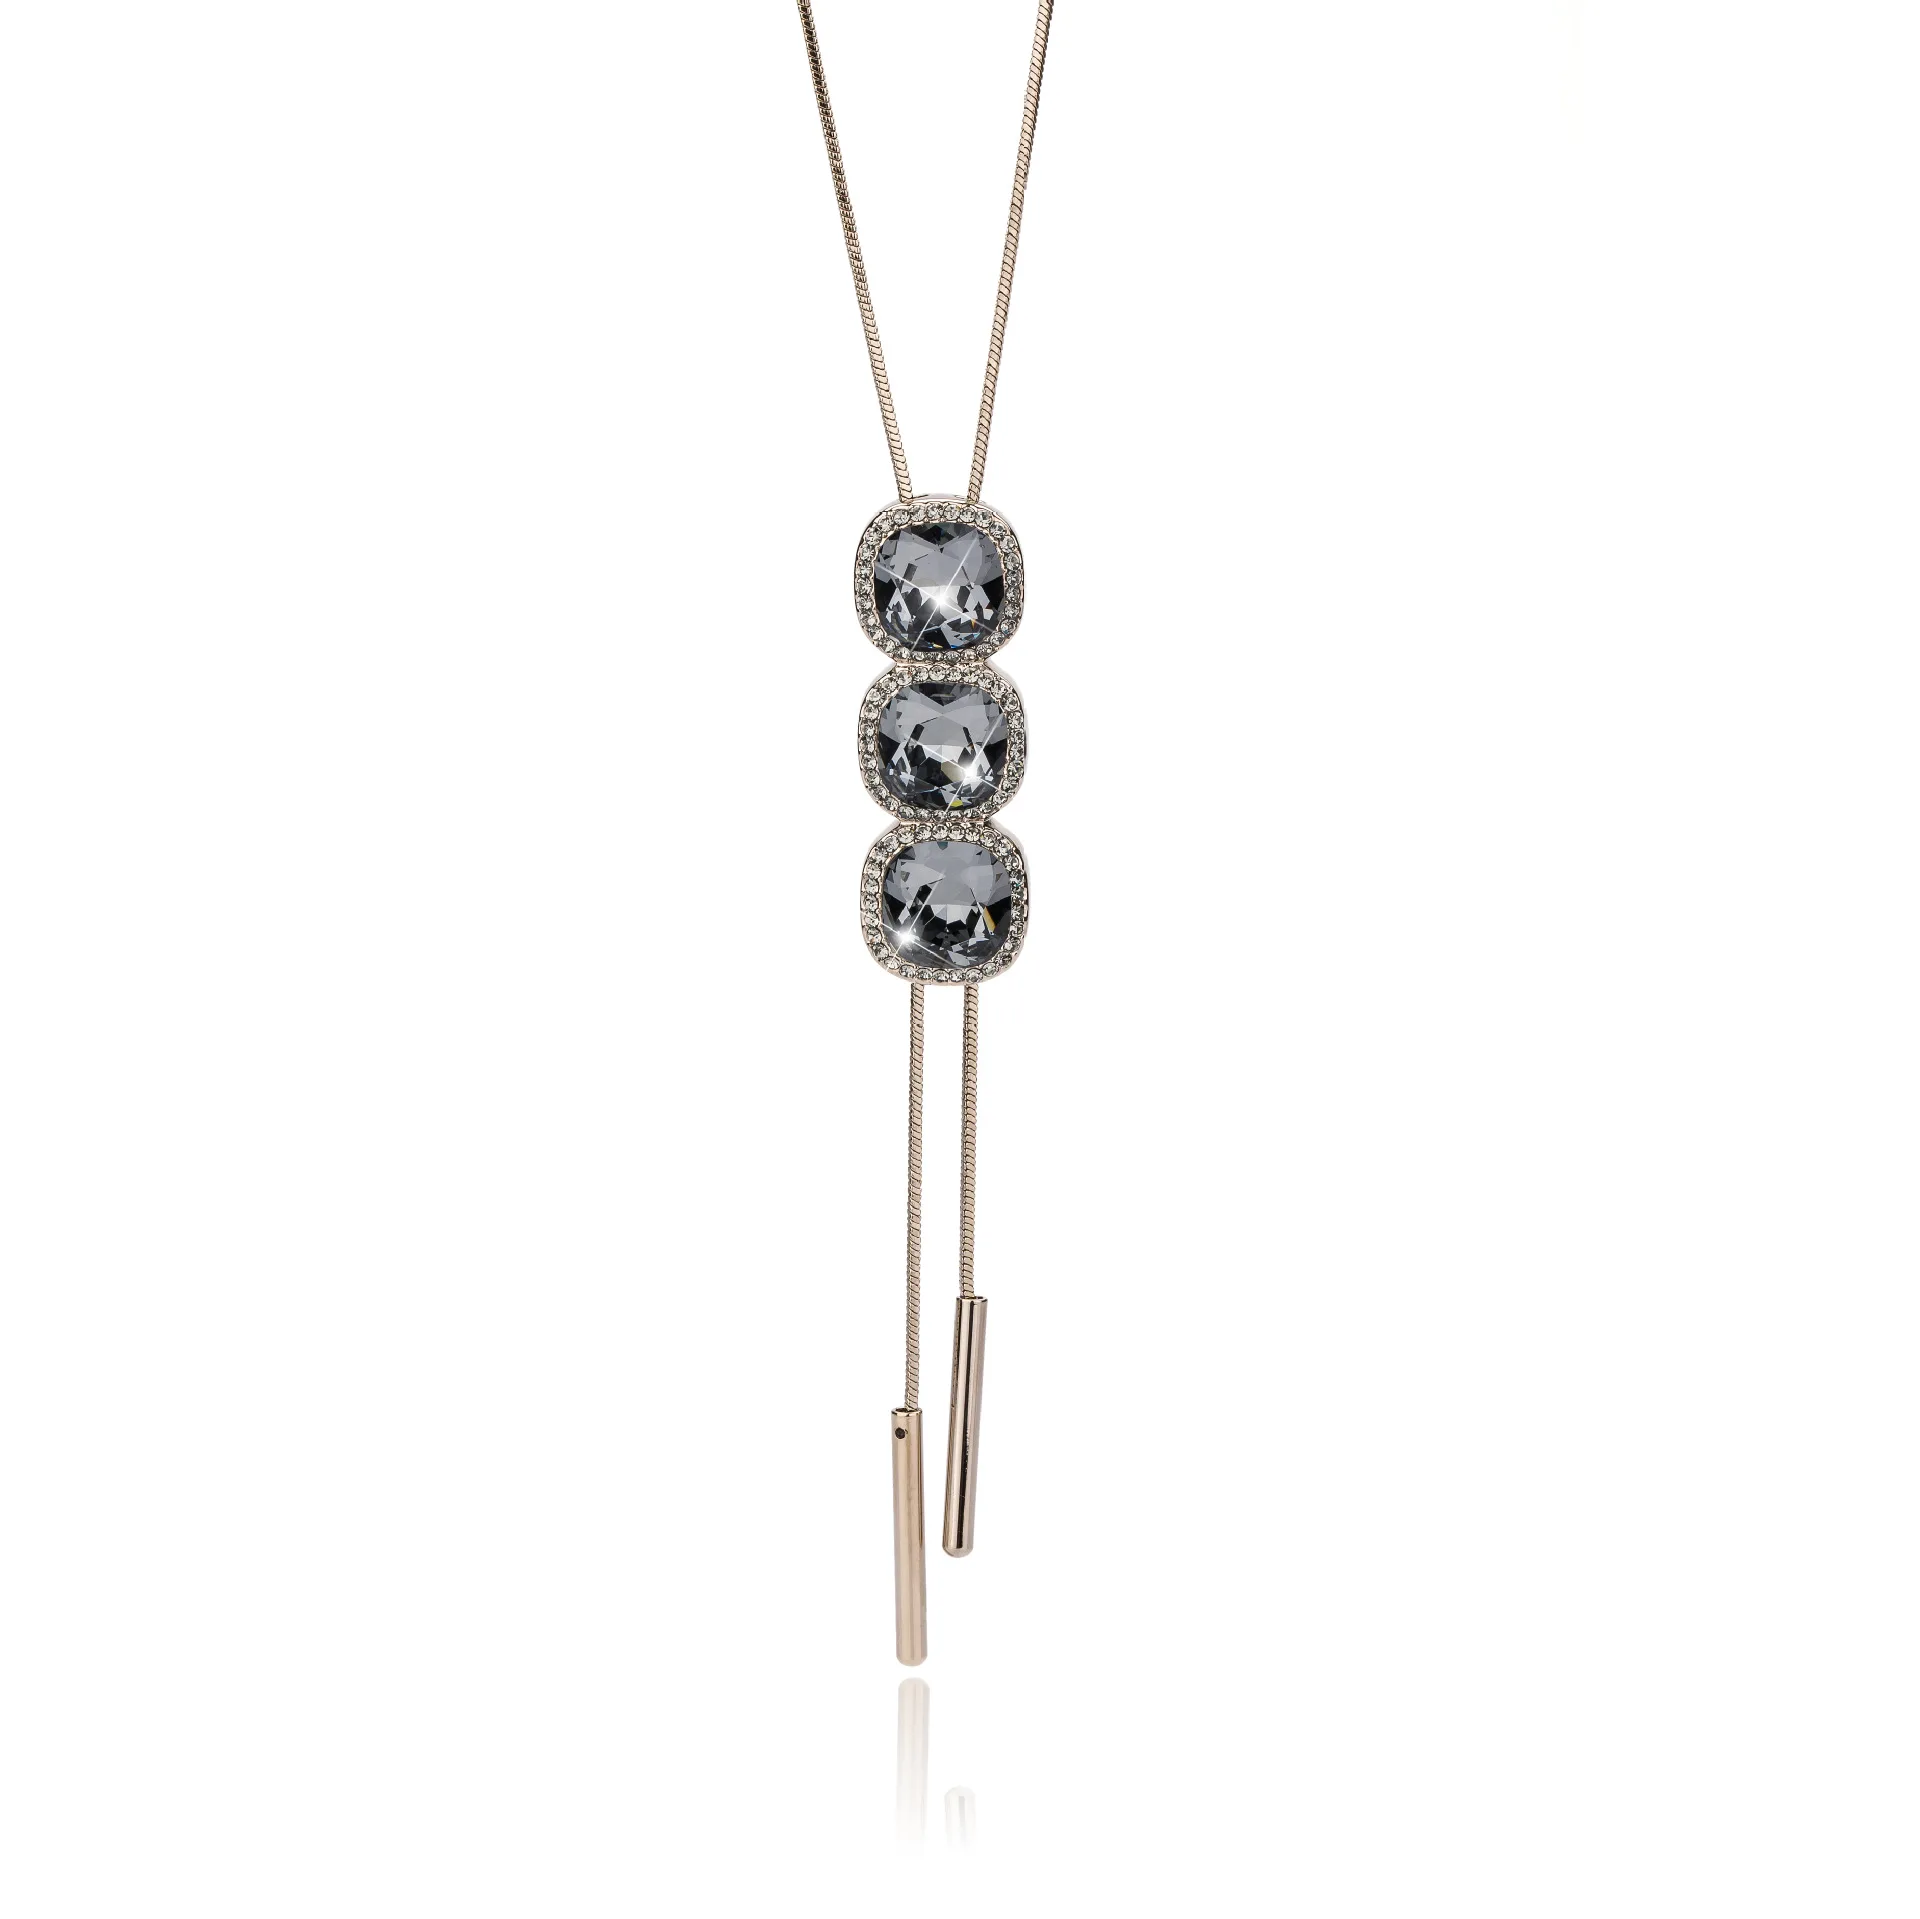 BYSPT циркониевое длинное ожерелье с голубым кристаллом, цепочка на свитер, модное ожерелье с подвеской, Женские Ювелирные аксессуары